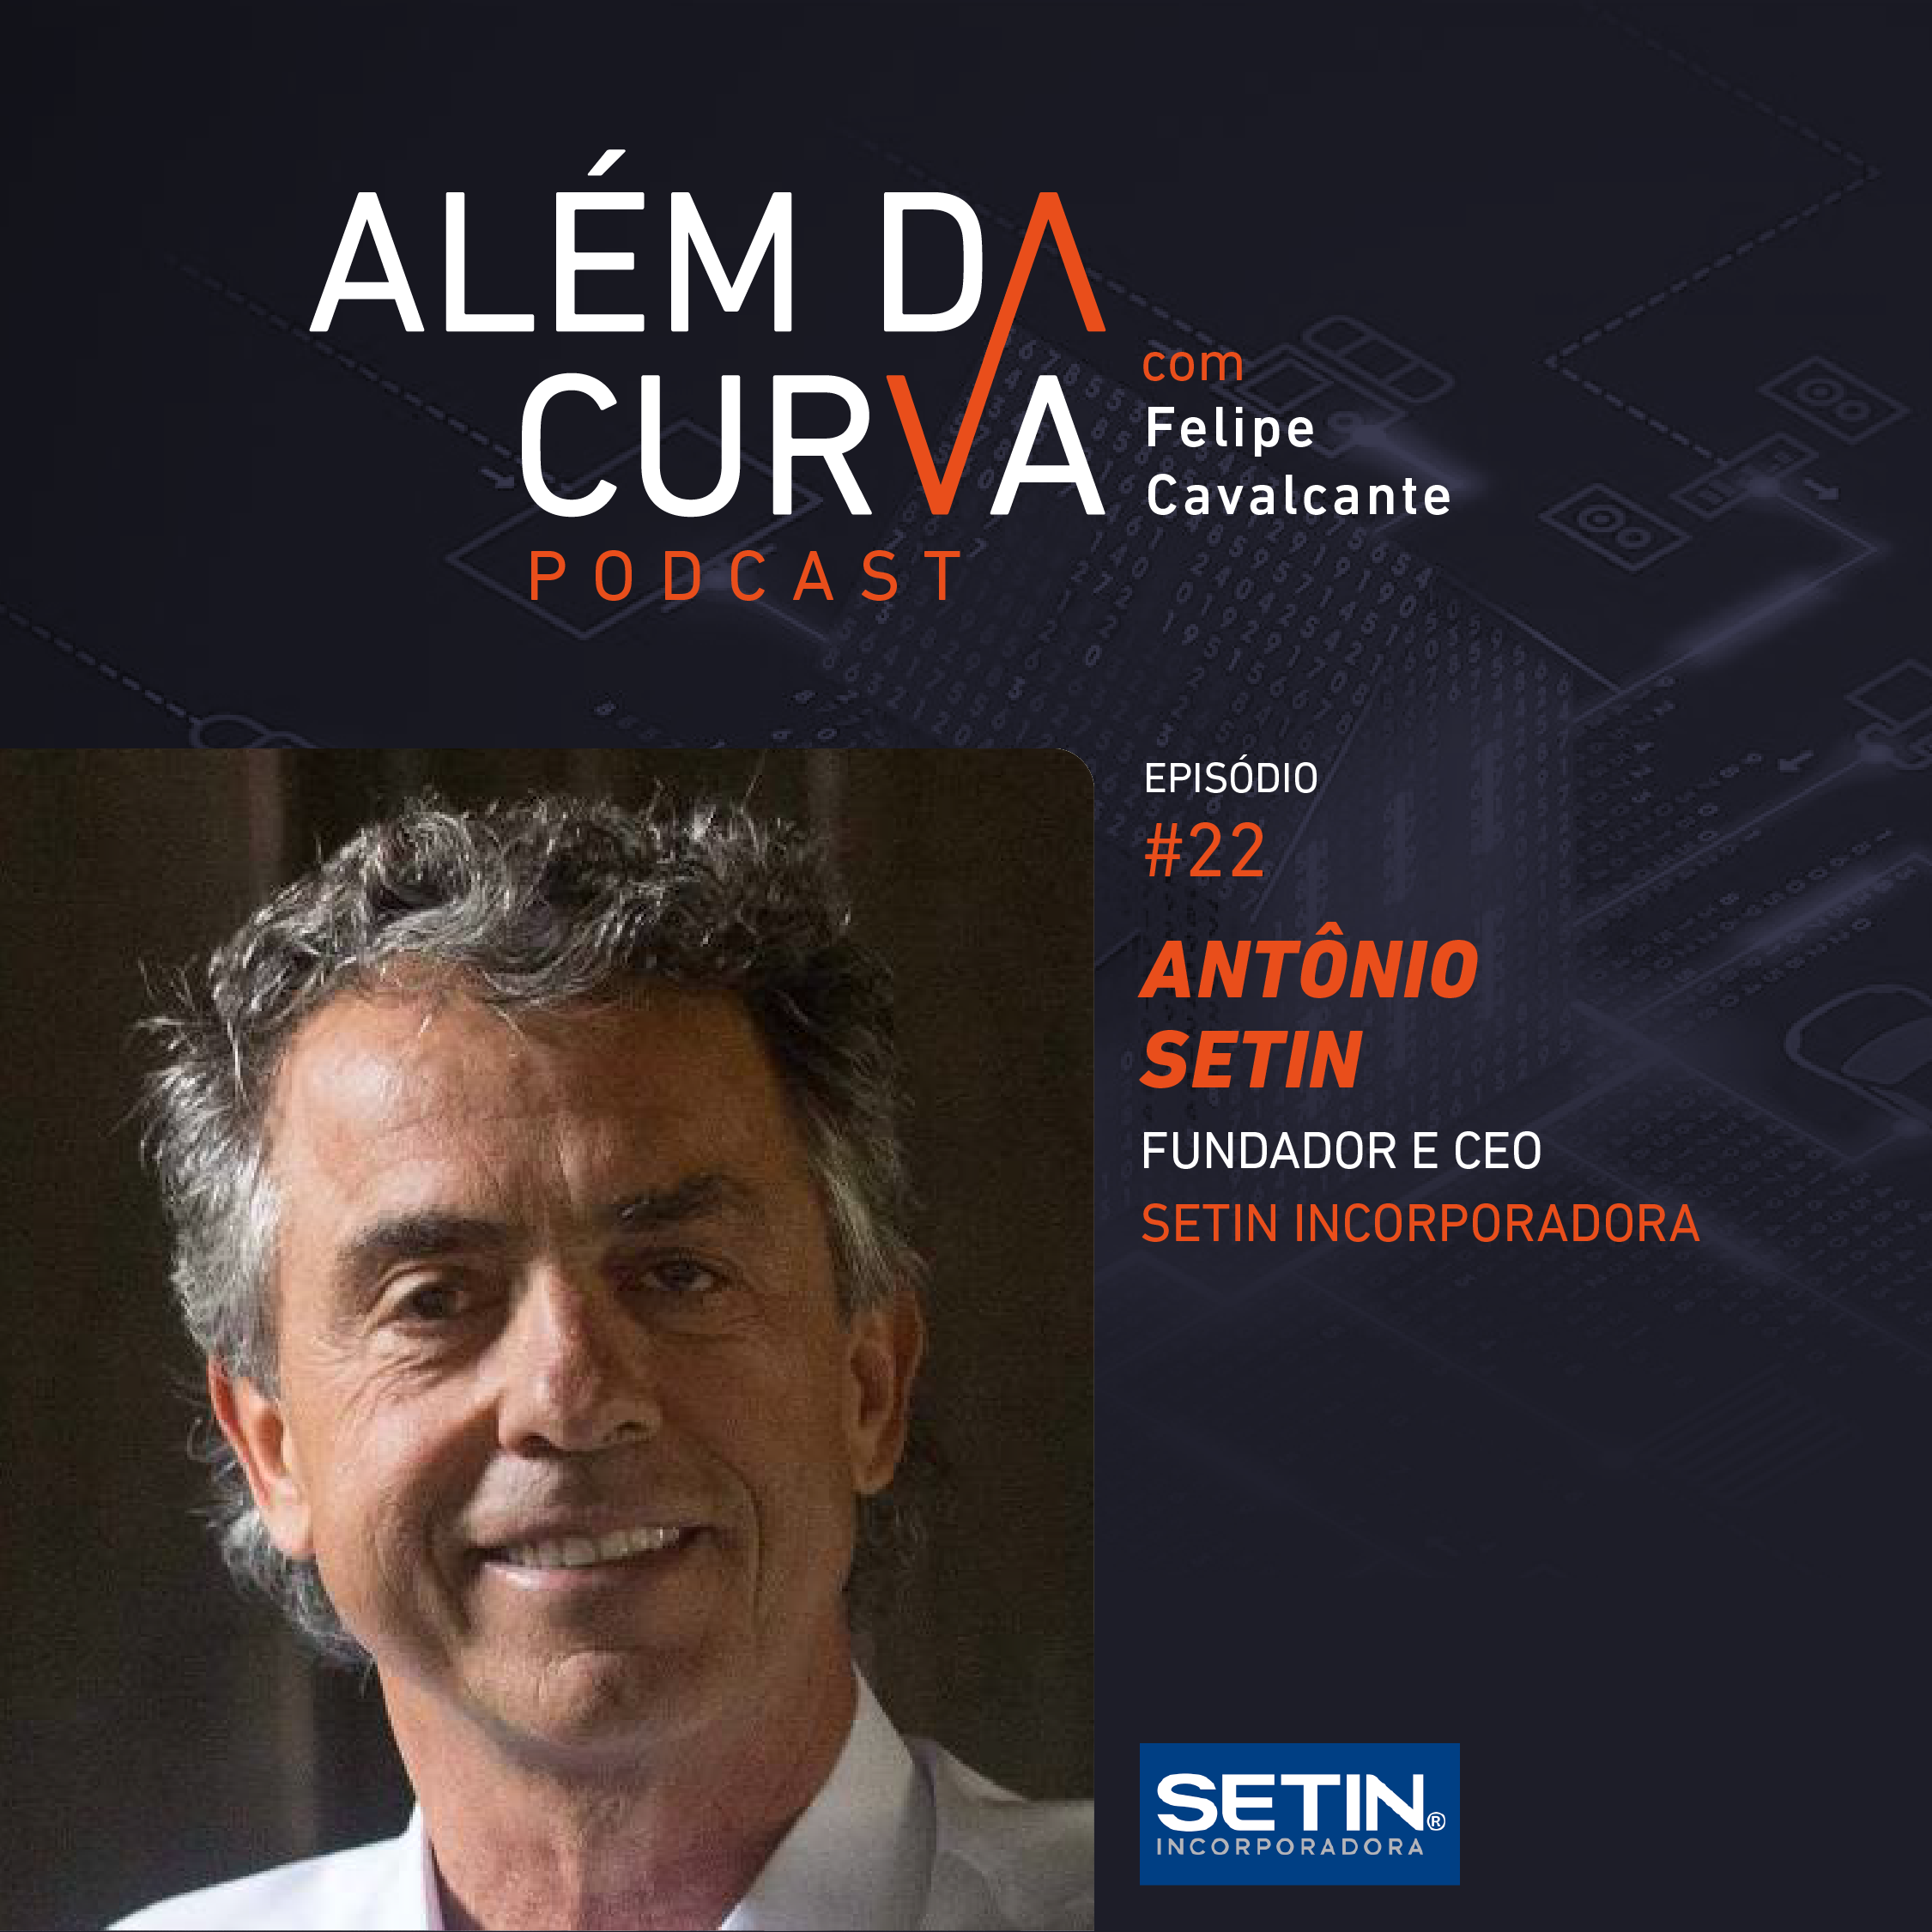 Antônio Setin, maior desenvolvedor de hotéis do Brasil, fala sobre o amadurecimento do mercado imobiliário e os rumos atuais de sua empresa